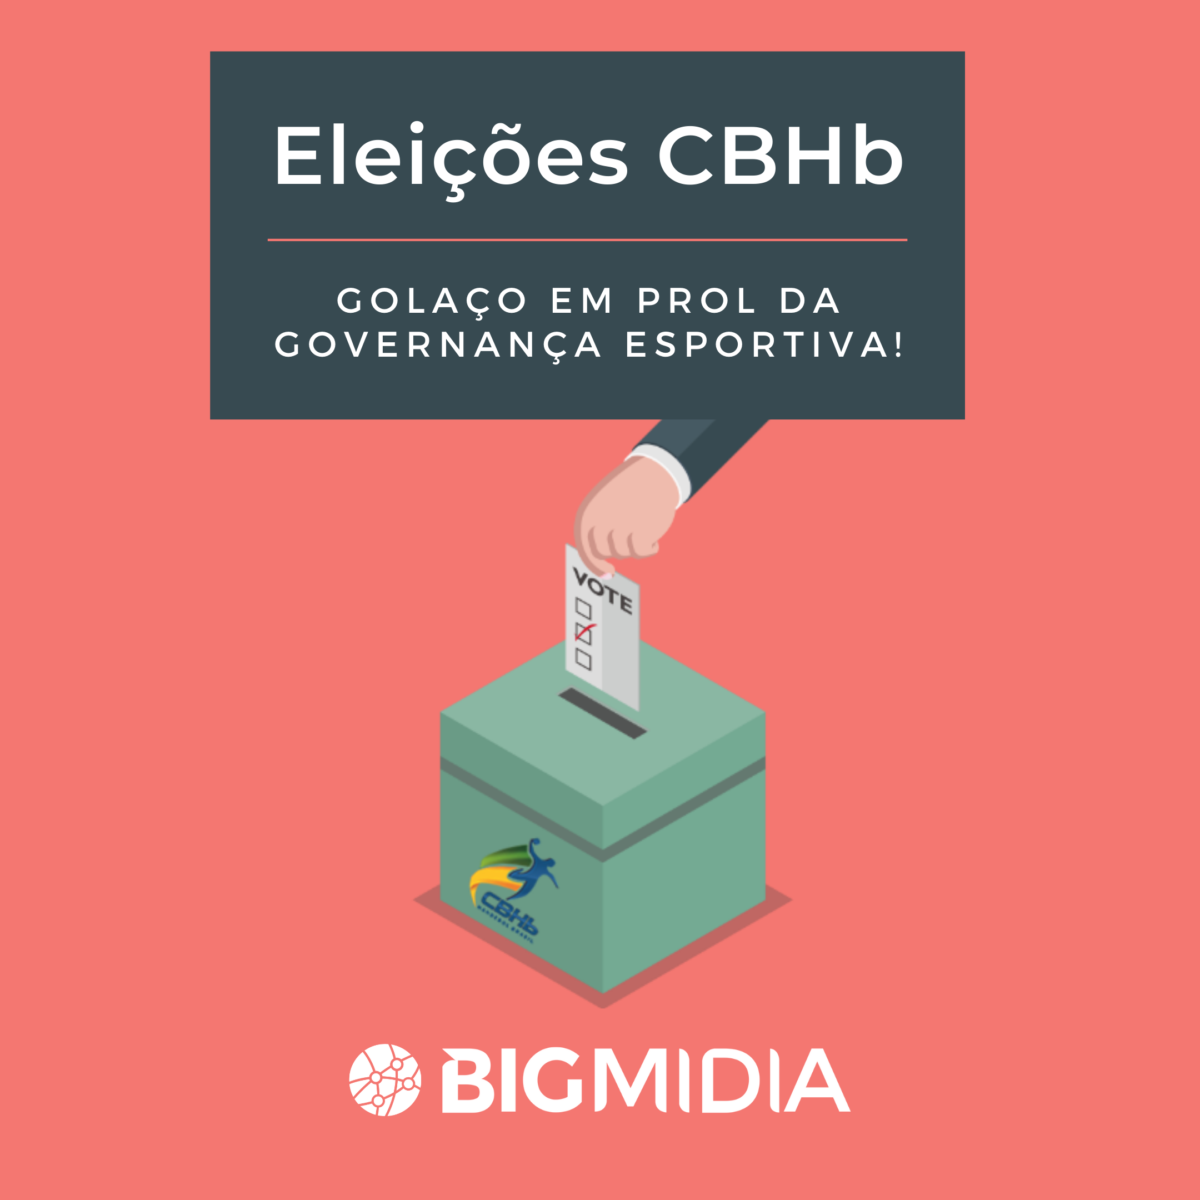 Eleições CBHb: Aula de Governança Esportiva